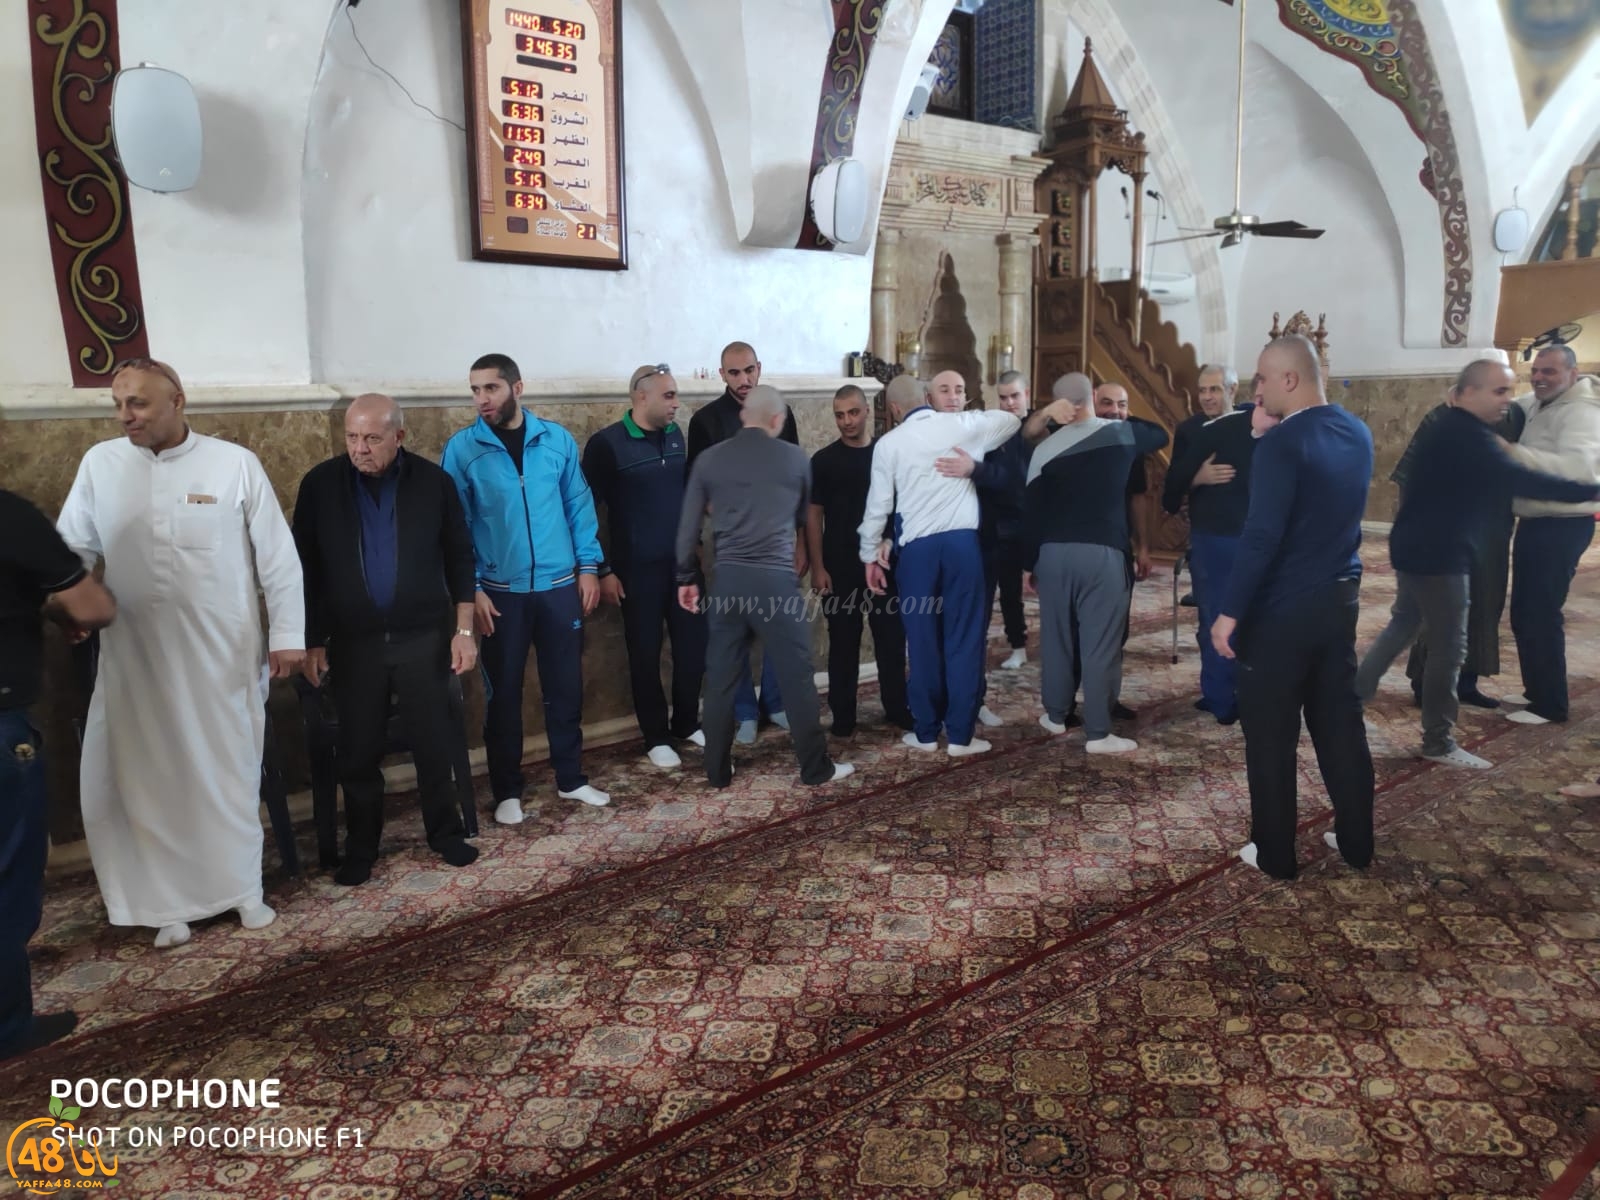 بالصور: عقد راية الصلح بين عائلات أبو سيف، بوبلي، أبو ربيعة في مسجد المحمودية بيافا